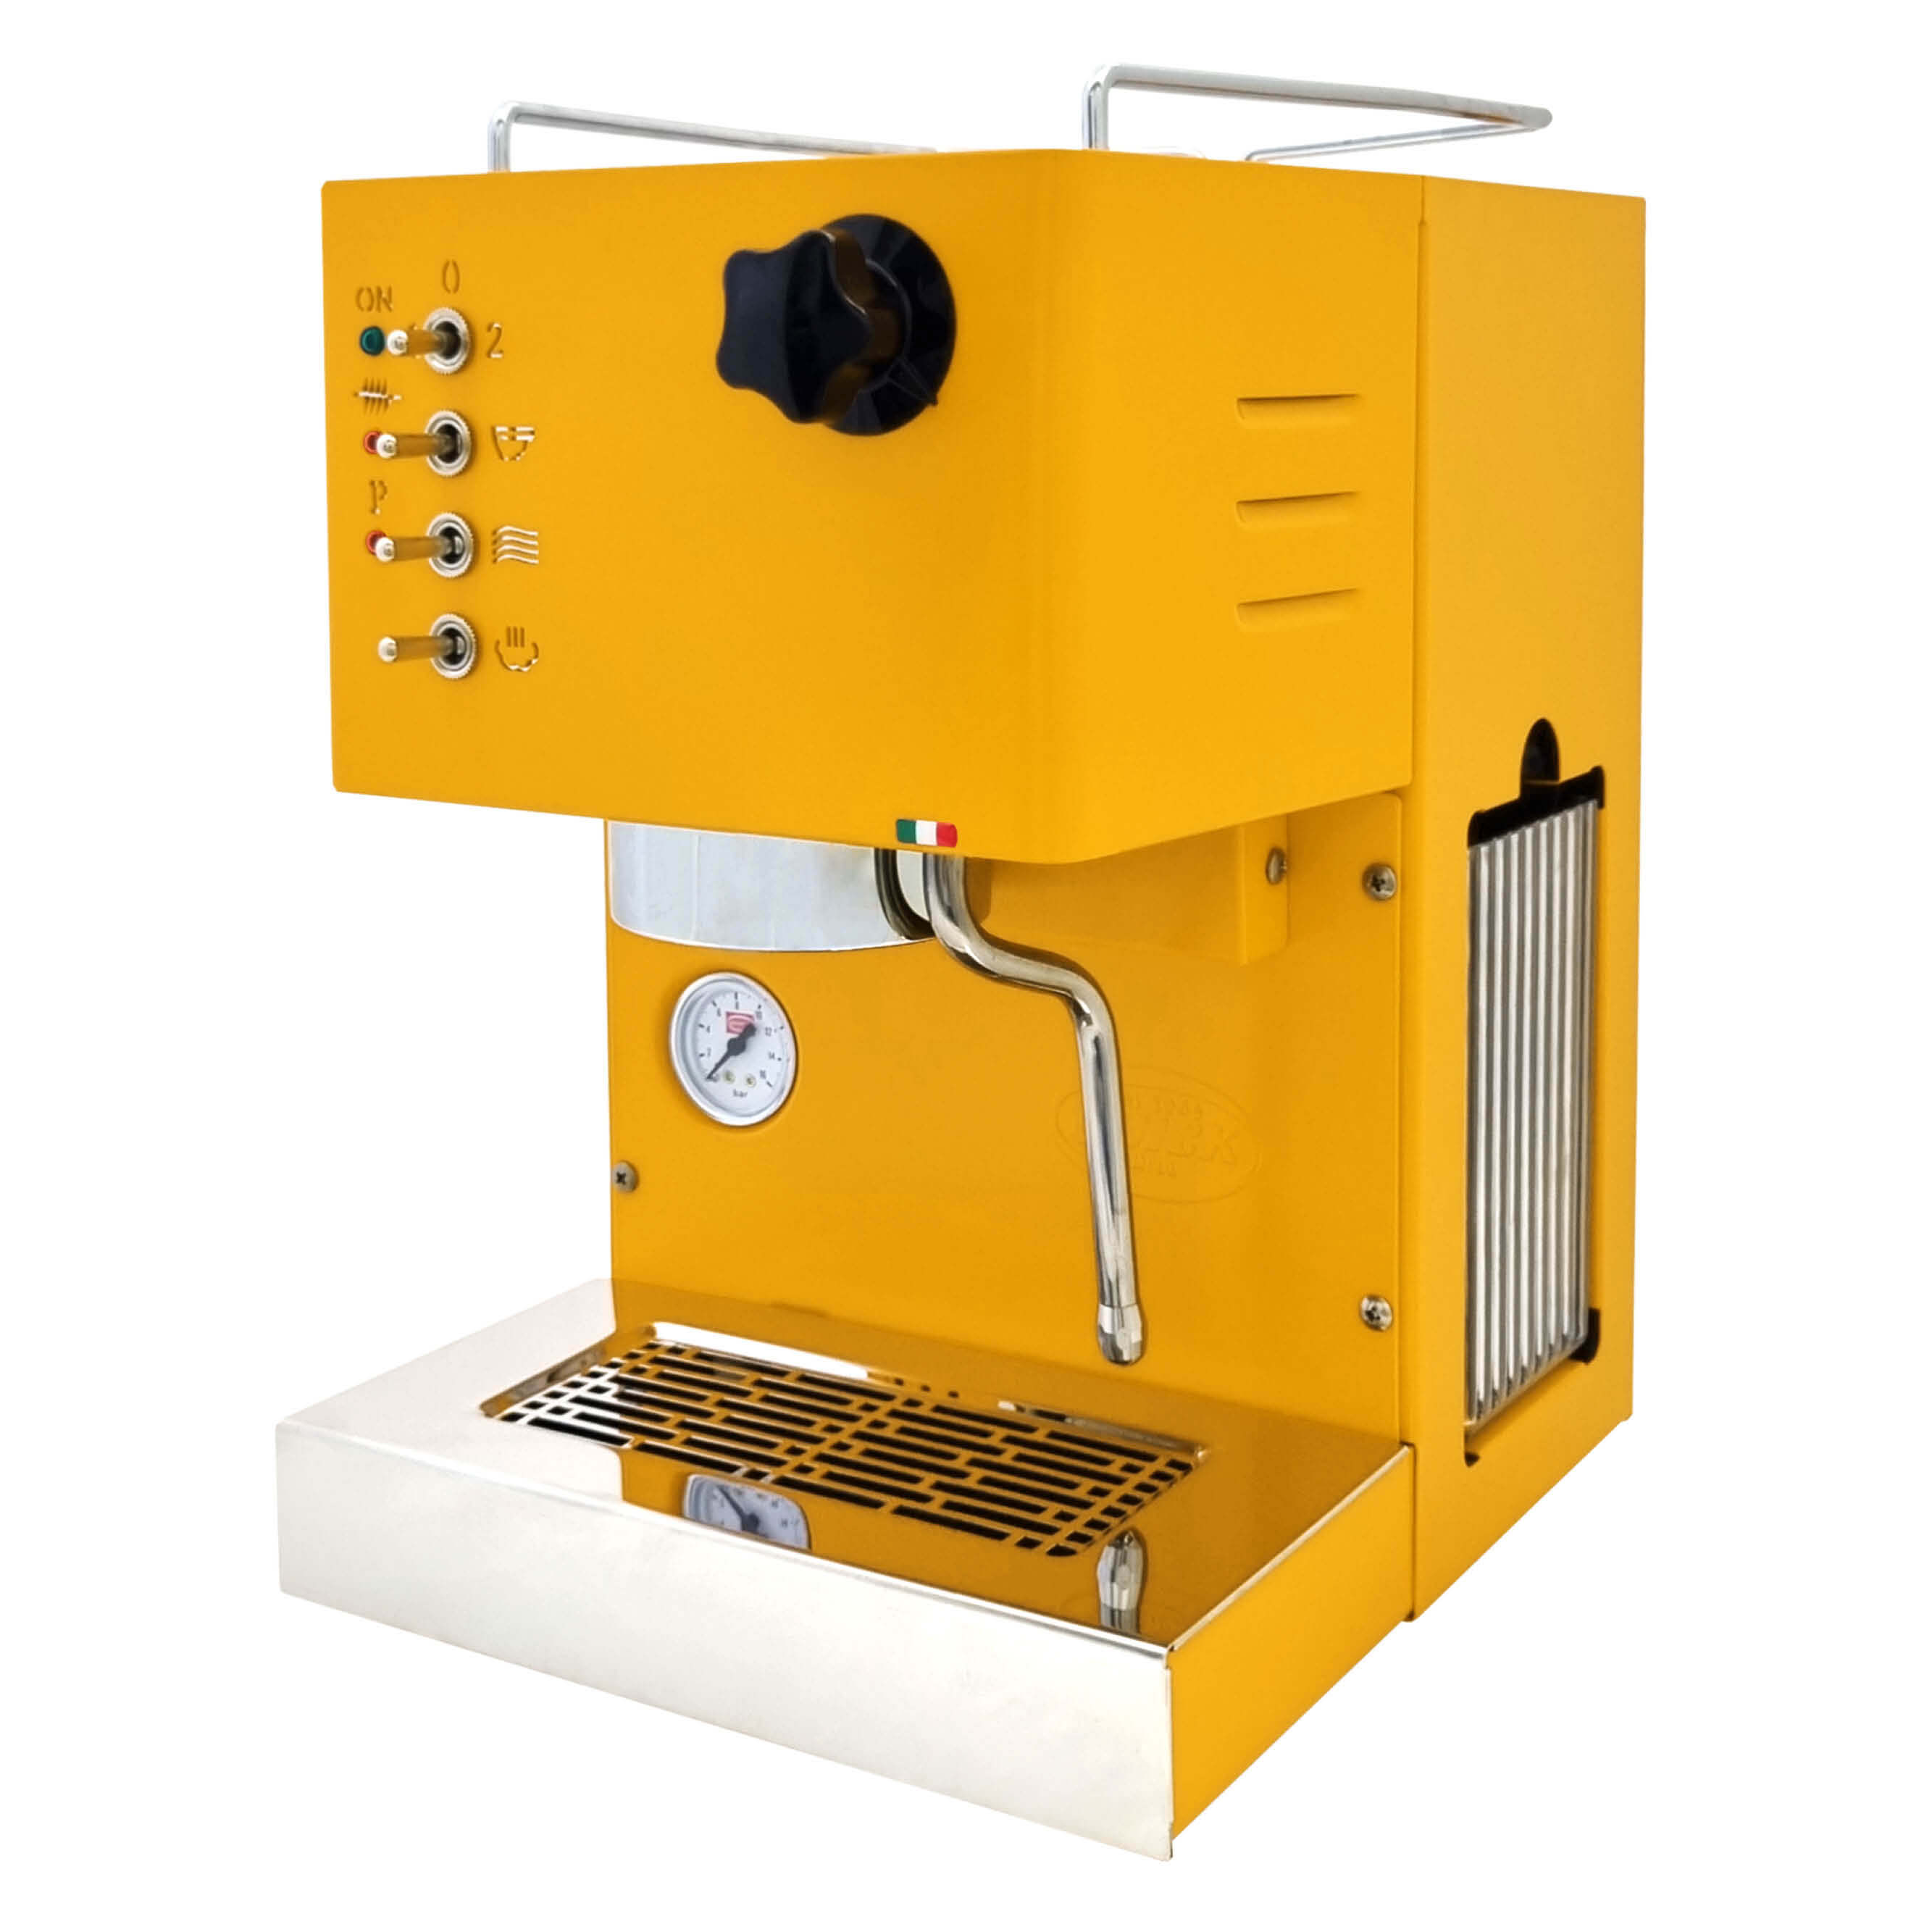 Quick Mill Pippa Espressomaschine gelb - Exklusiv bei Kaffee24